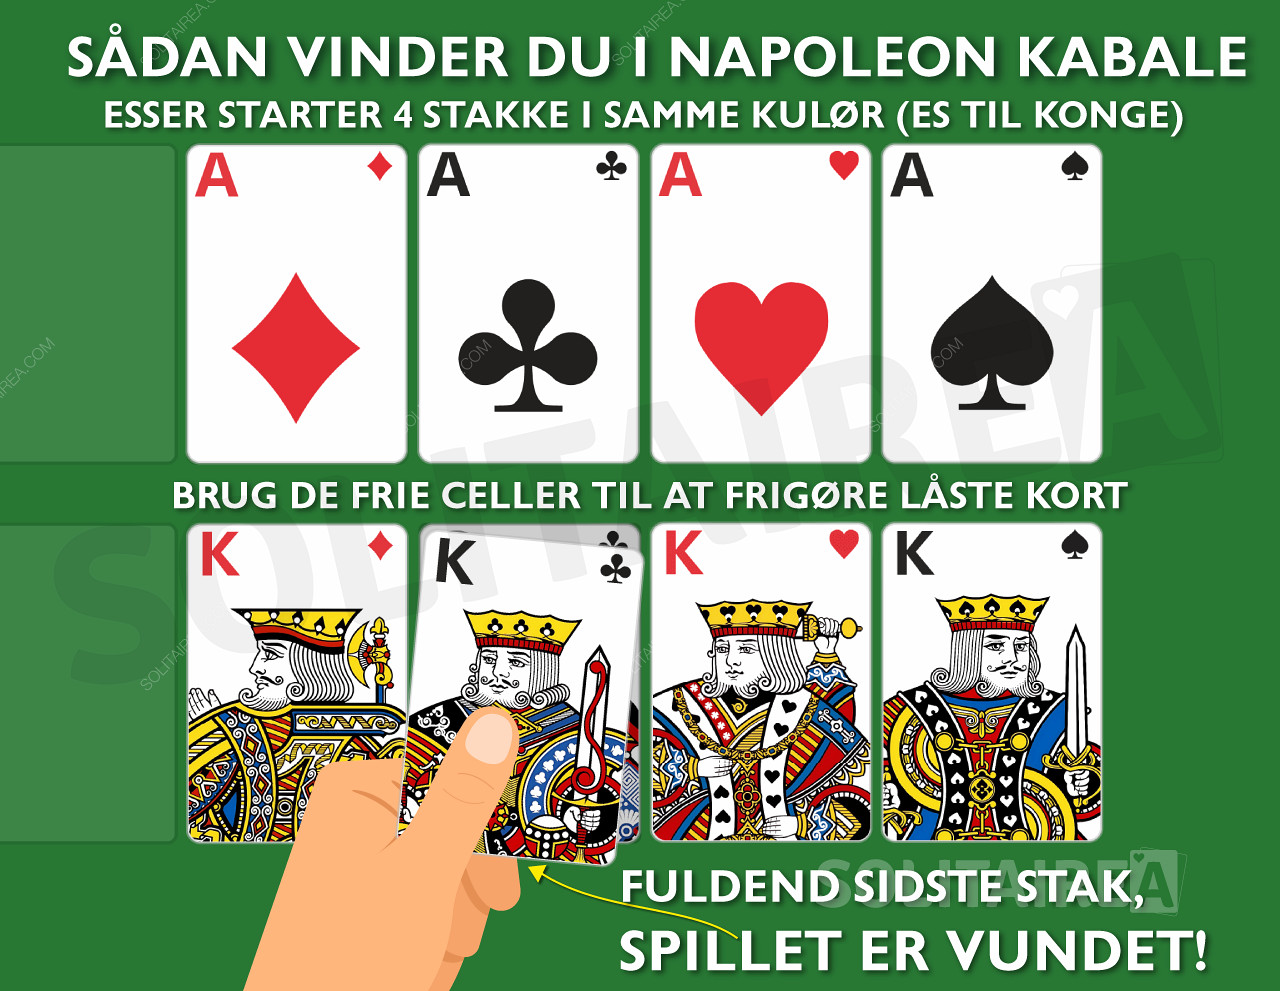 Hvordan vinder jeg i Napoleon Kabale? Saml de 4 bunker af ensfarvede kort.